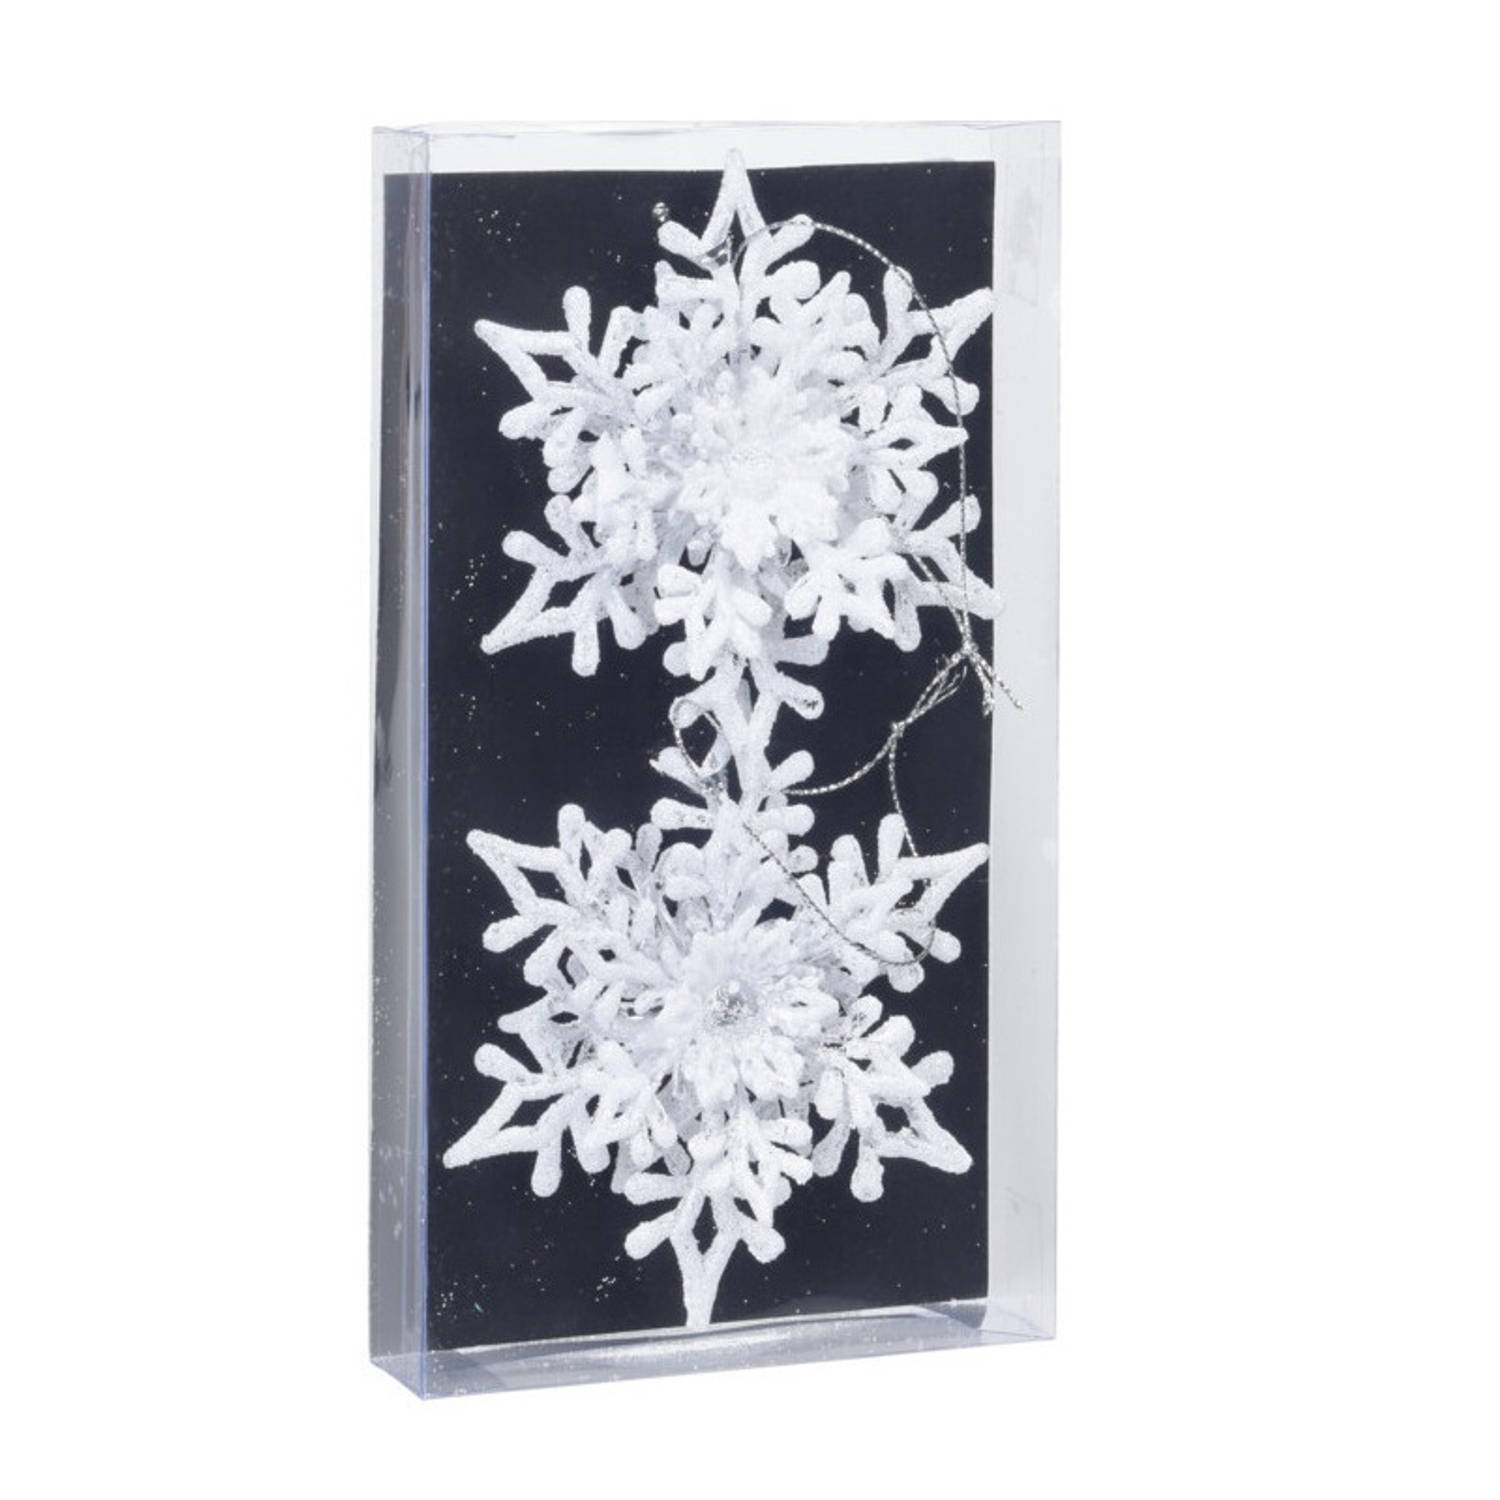 2x stuks kerstboomversiering hangers sneeuwvlokken transparant/wit 11,5 cm - Kersthangers